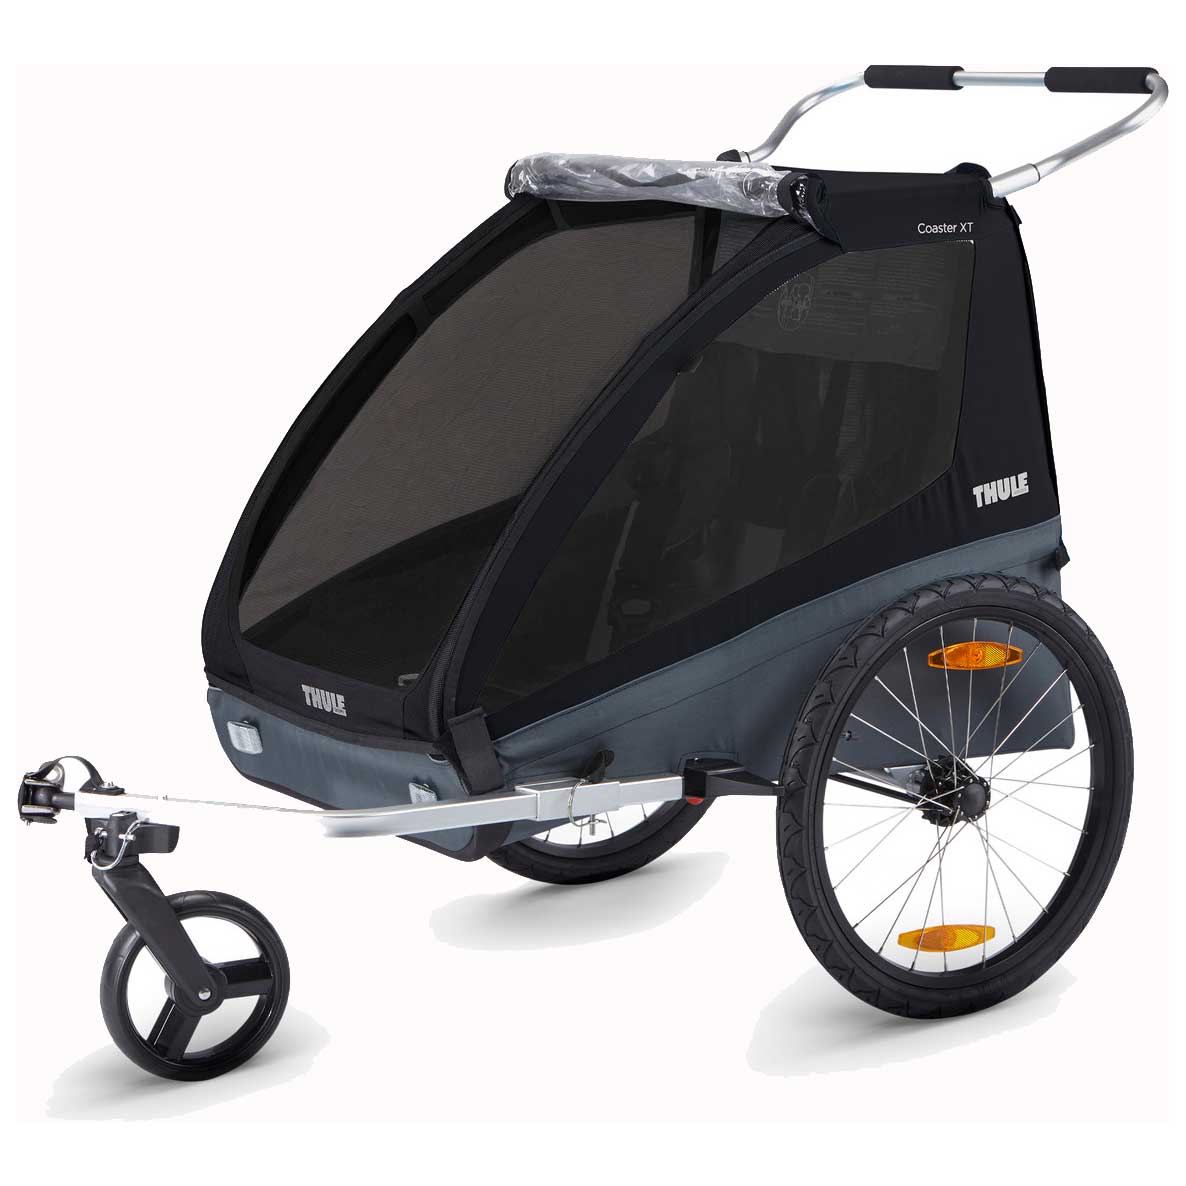 Produktbild von Thule Coaster XT Fahrradanhänger für 1-2 Kinder - Fahrrad + Buggy Set - schwarz